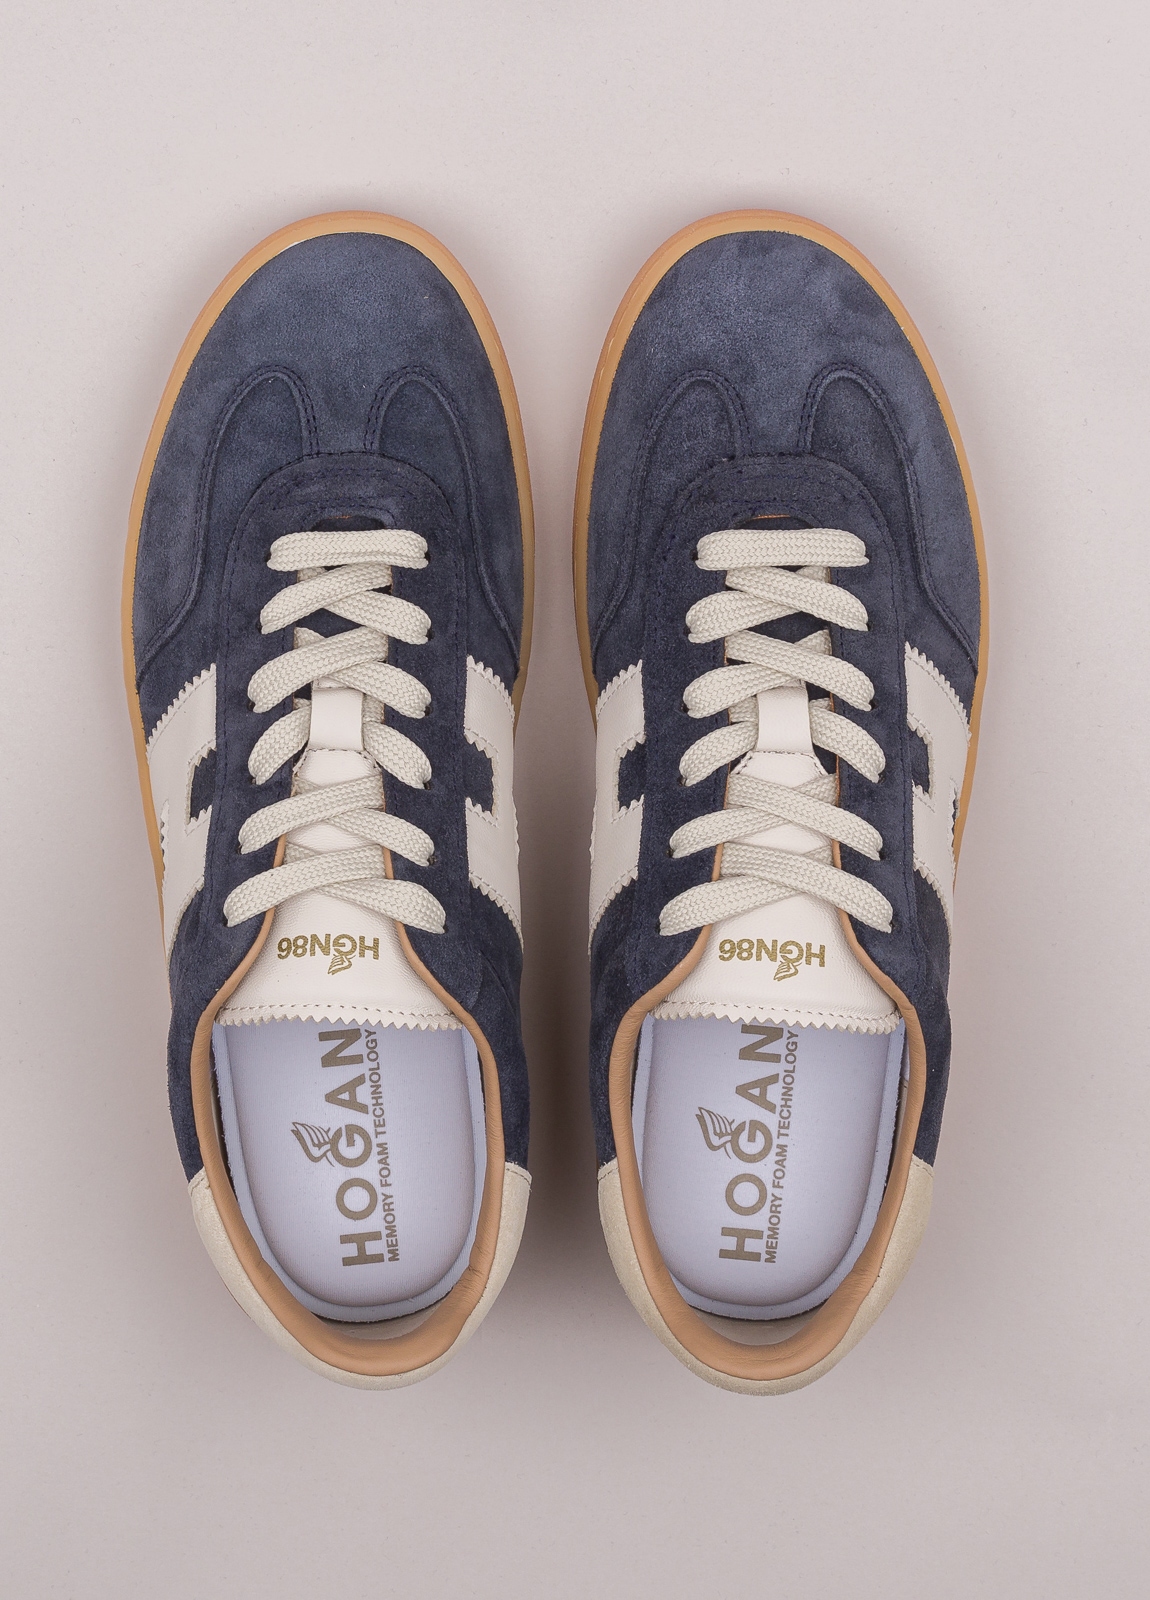 Zapatillas deportivas HOGAN color azul, blanco y beige - Ítem1